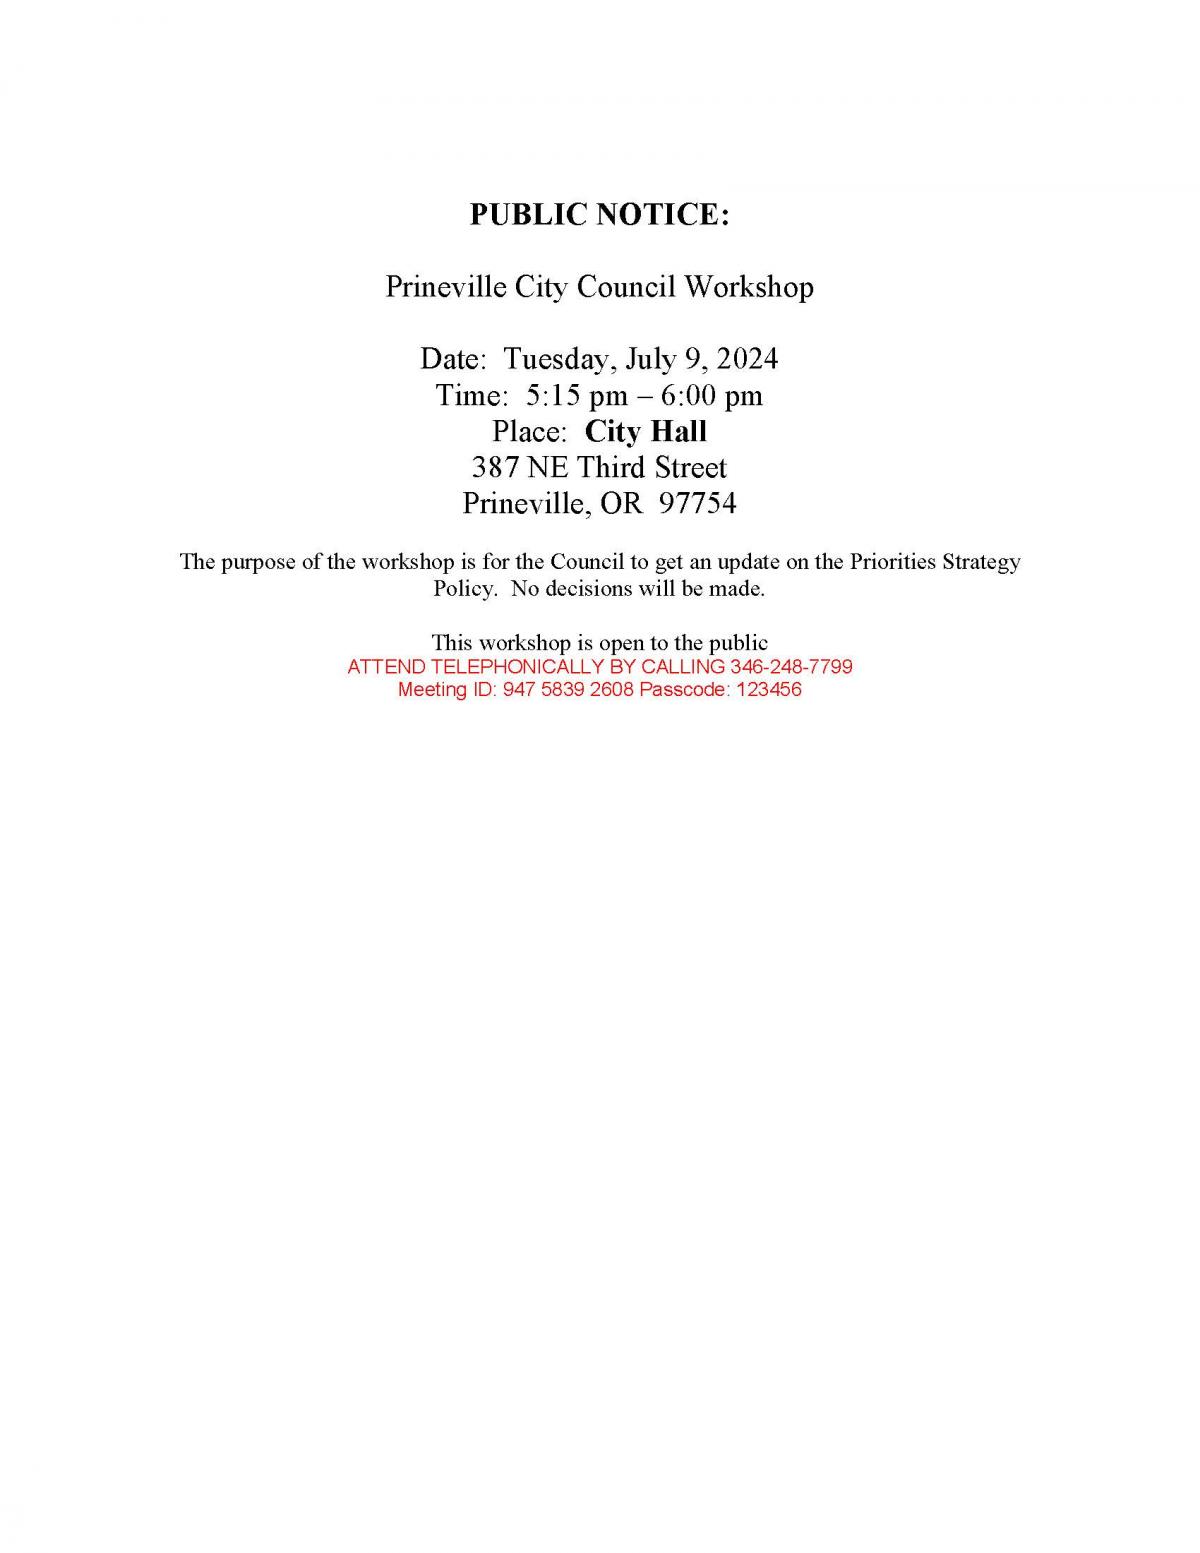 Public Notice - Council Workshop 7-9-2024